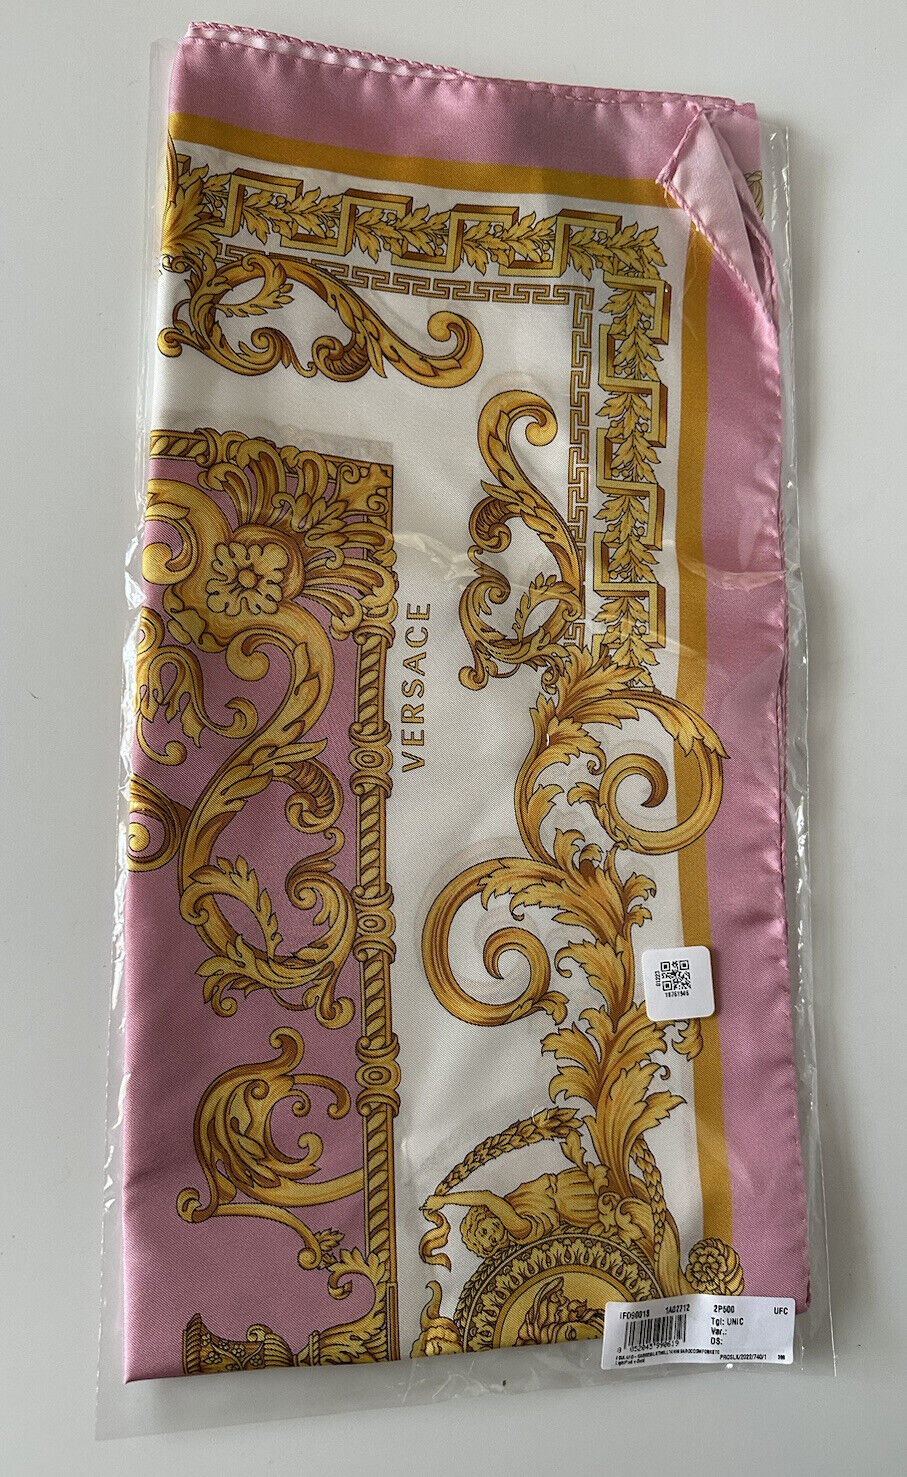 NWT $500 Versace Medusa Silk Twill Barocco Foulard Scarf 36.5”x 36” IT IF090018